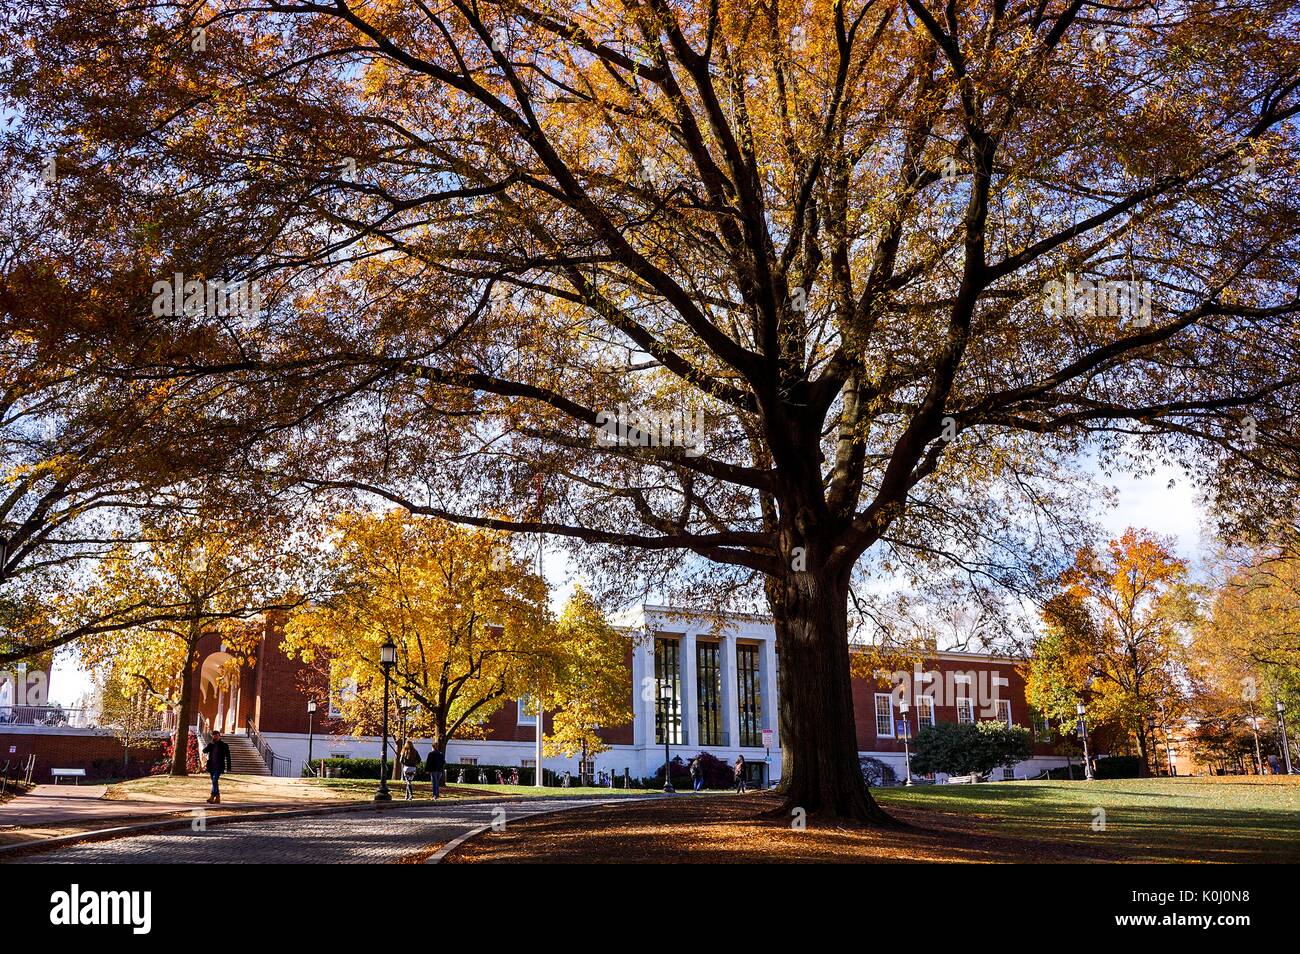 Des arbres couverts de feuilles automnales orange et jaune encadrent la bibliothèque Milton S. Eisenhower sur le campus Homewood de l'Université Johns Hopkins à Baltimore, Maryland, 2015. Avec la permission d'Eric Chen. Banque D'Images